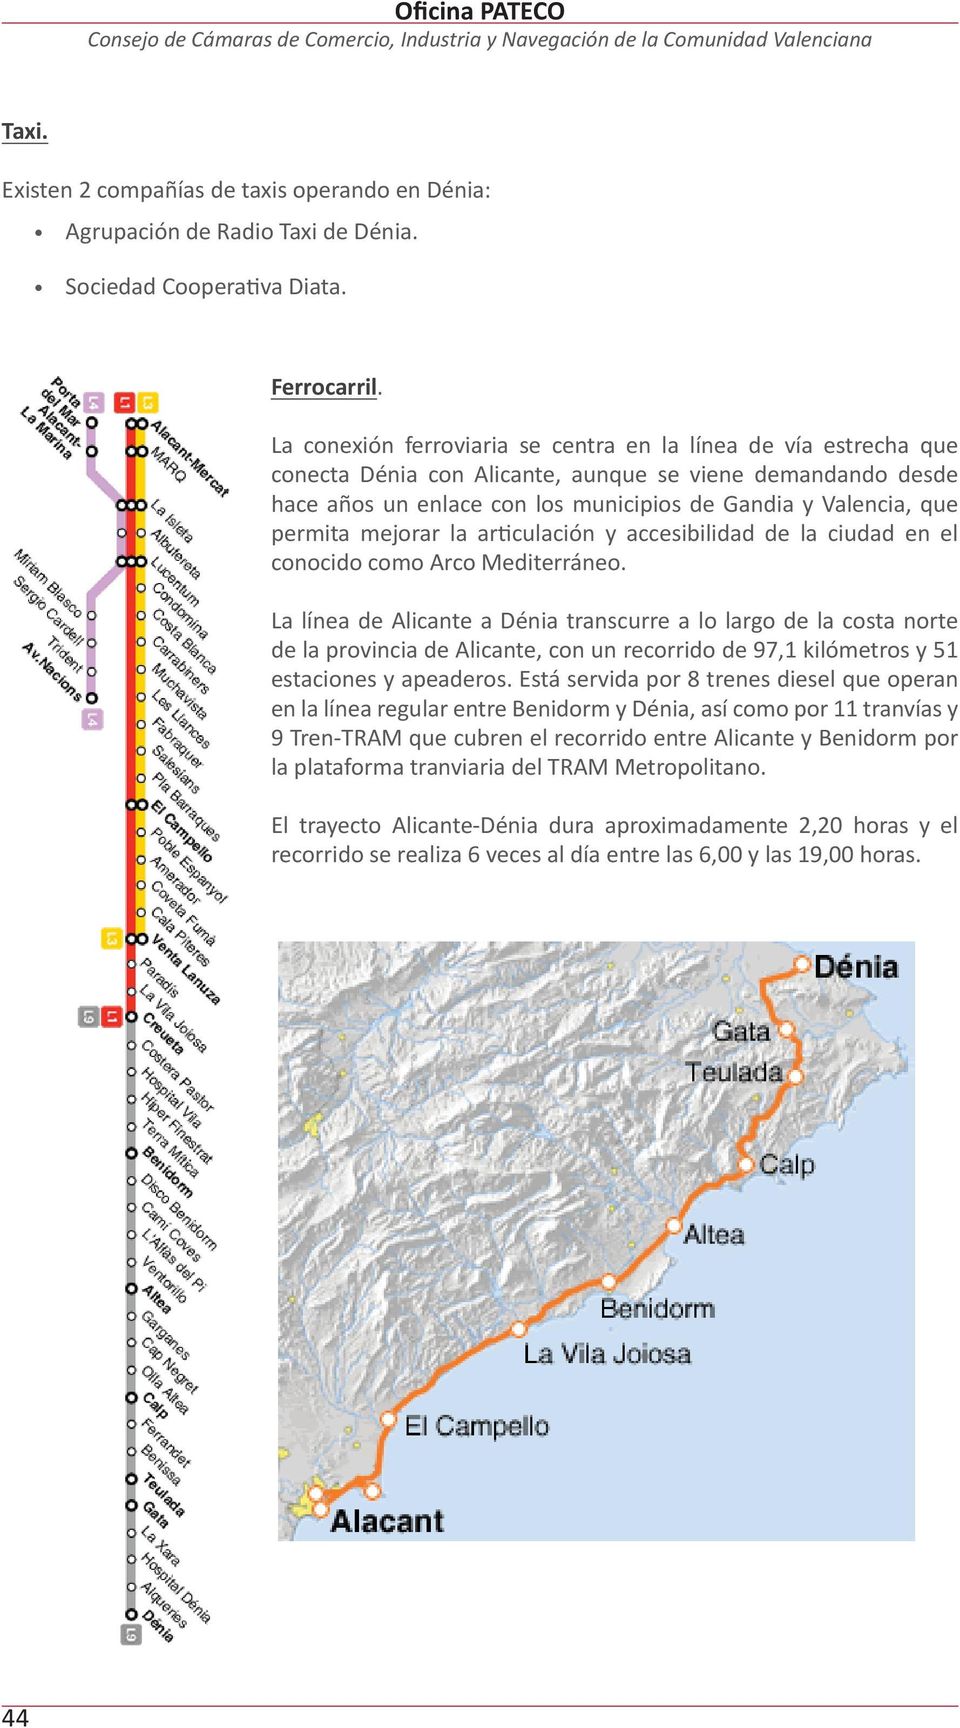 La conexión ferroviaria se centra en la línea de vía estrecha que conecta Dénia con Alicante, aunque se viene demandando desde hace años un enlace con los municipios de Gandia y Valencia, que permita